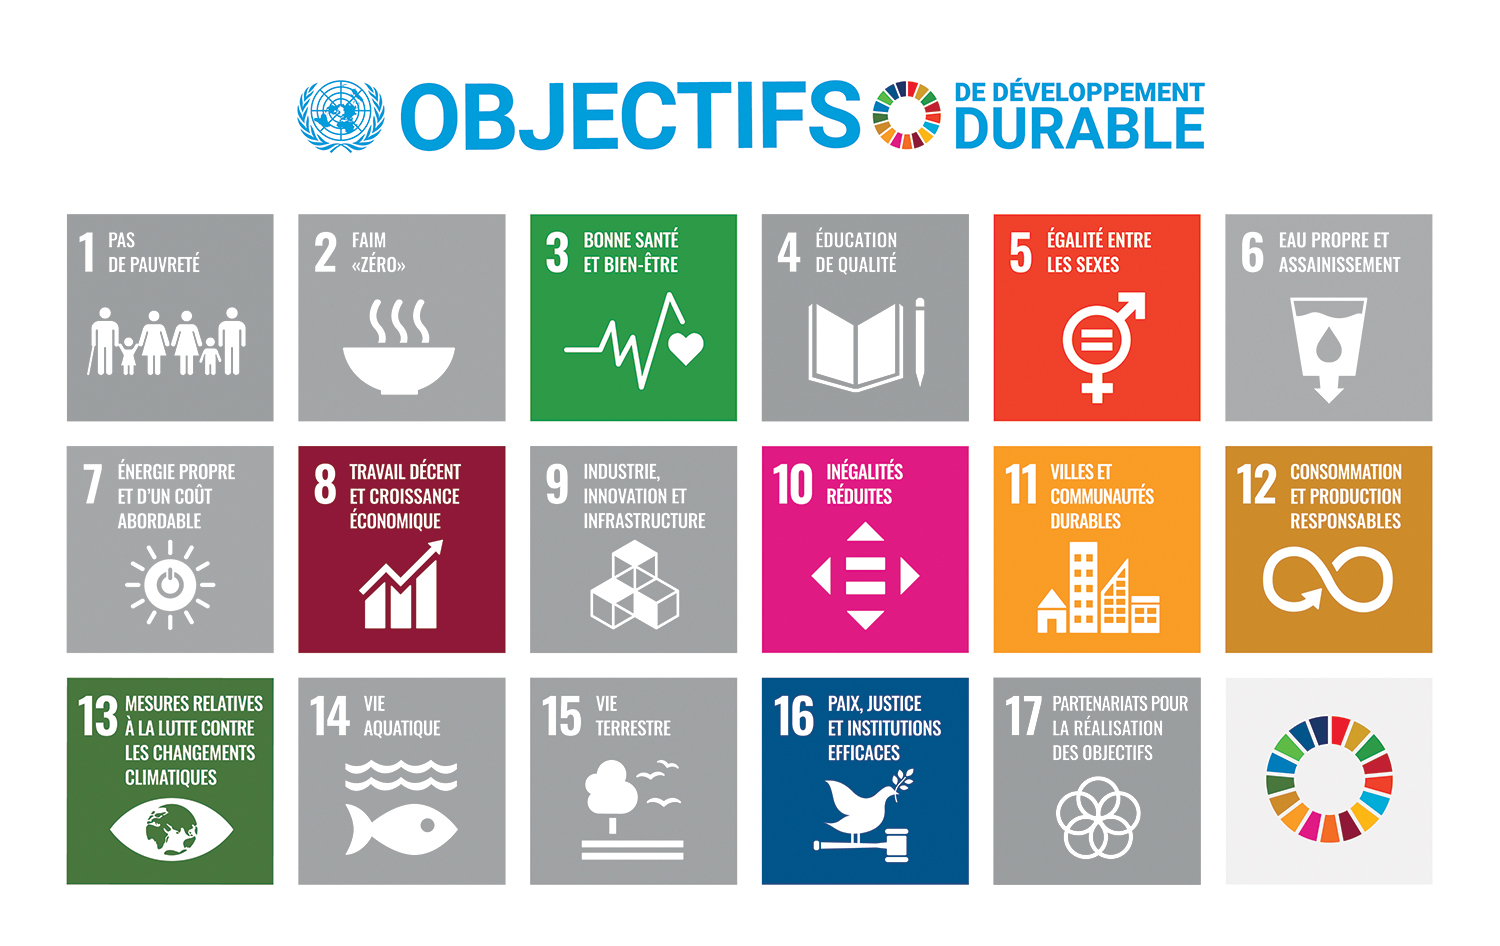 Objectifs de développement durable (ODD) des Nations Unies